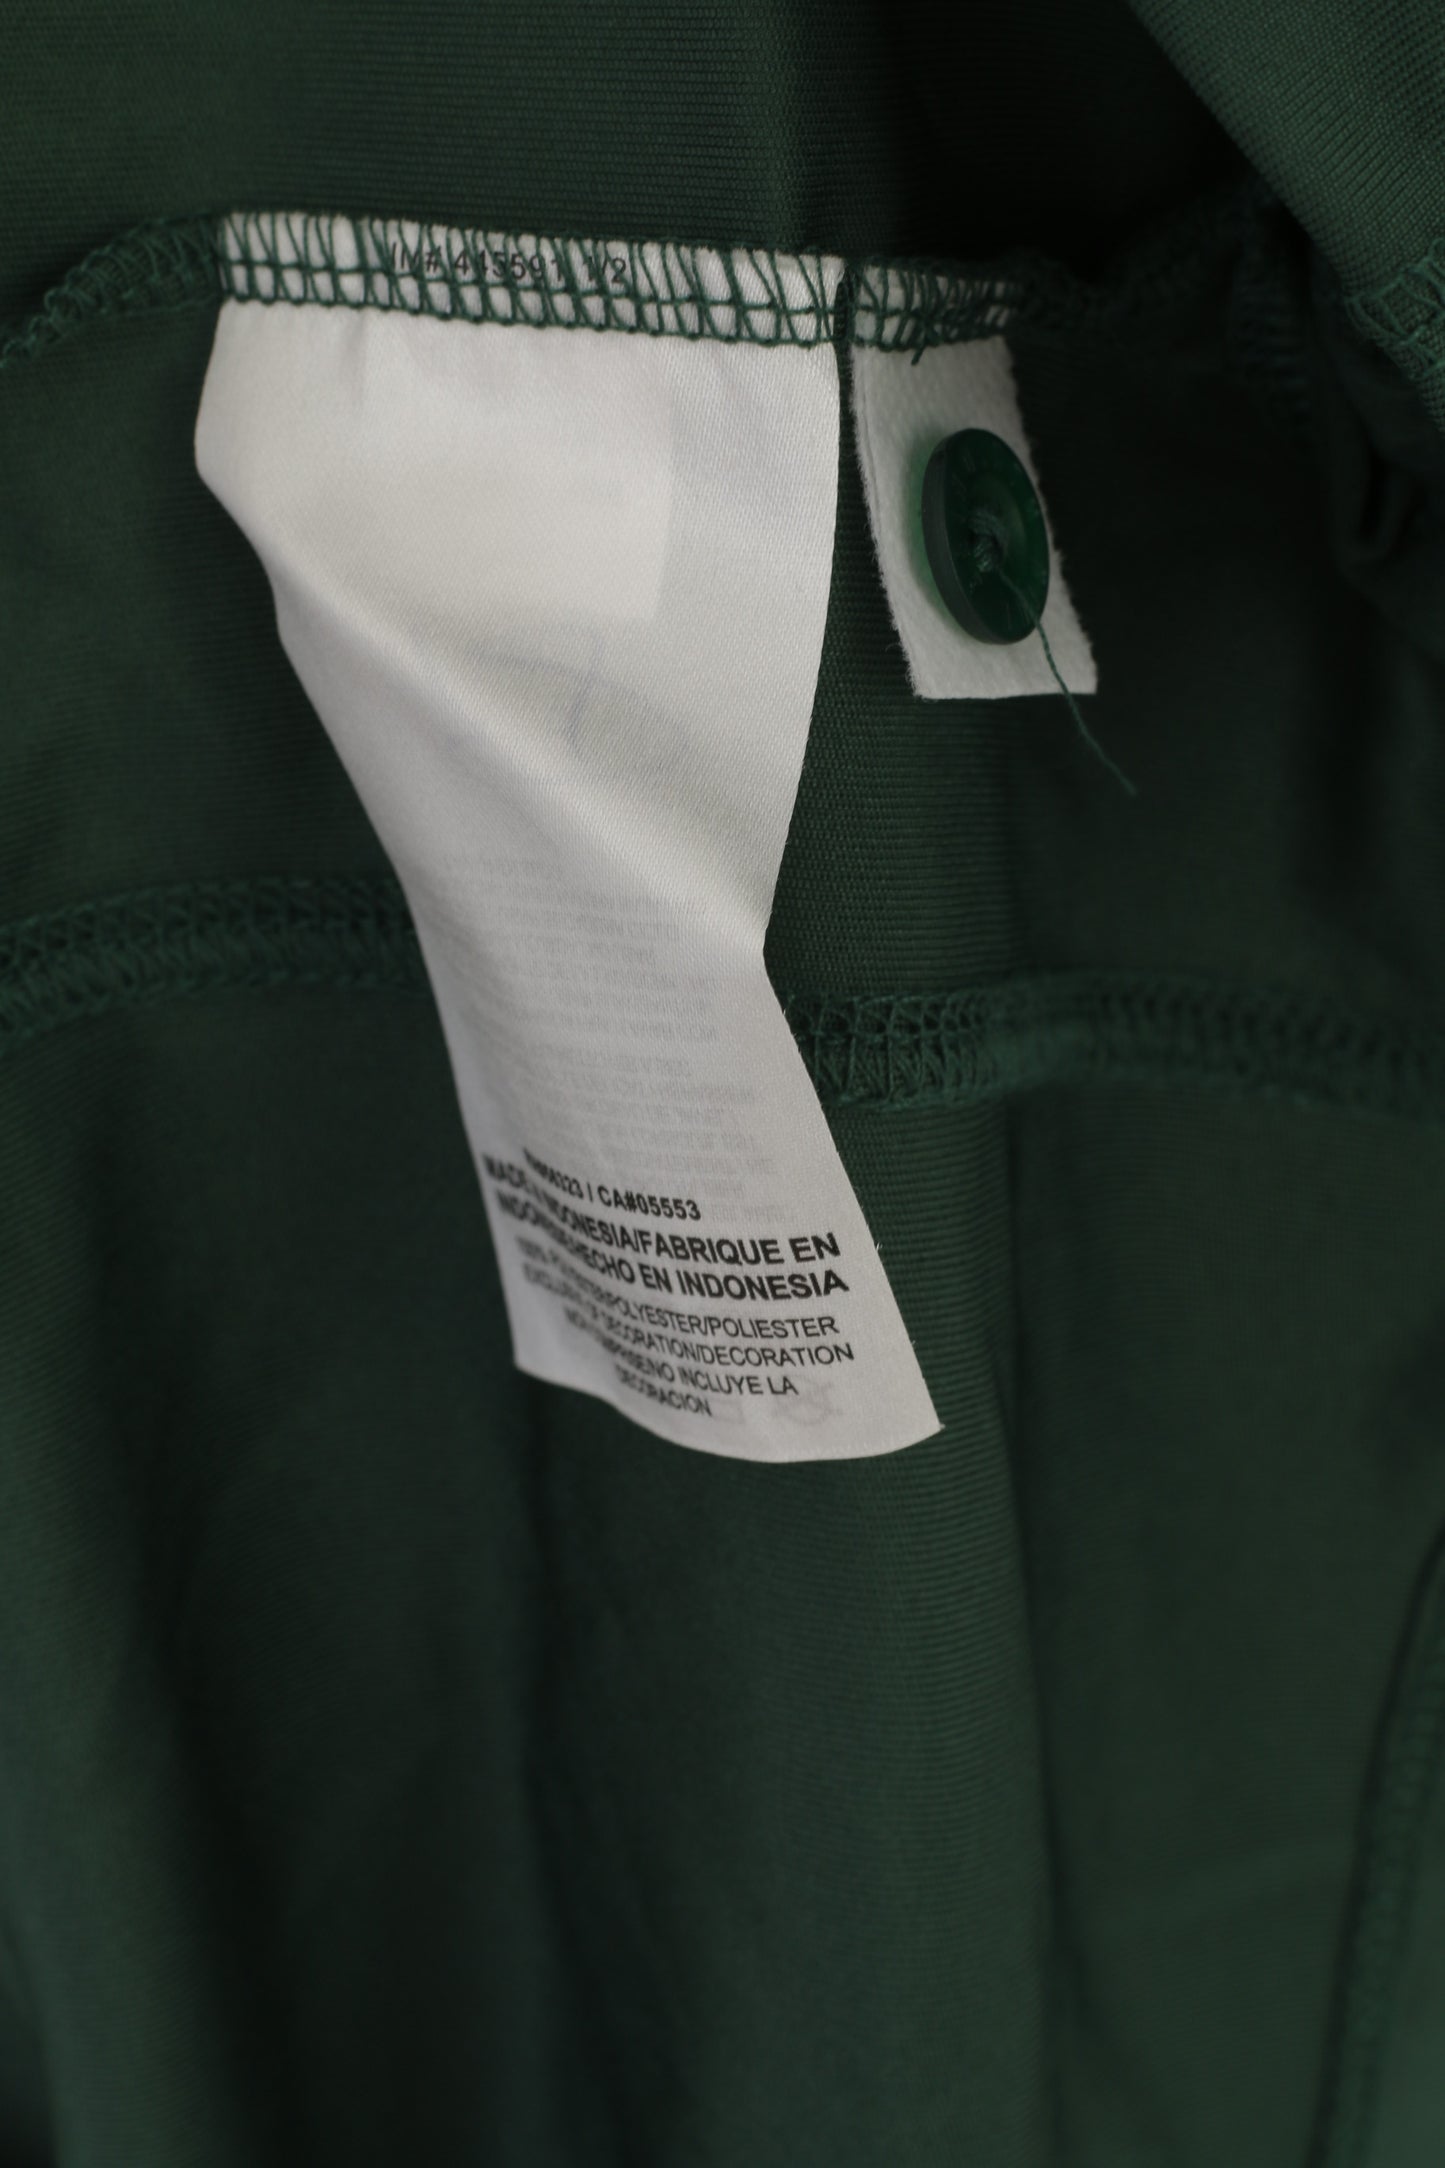 Polo Nike S da uomo verde Dri-Fit Sportswear Top in jersey con logo Just Do It